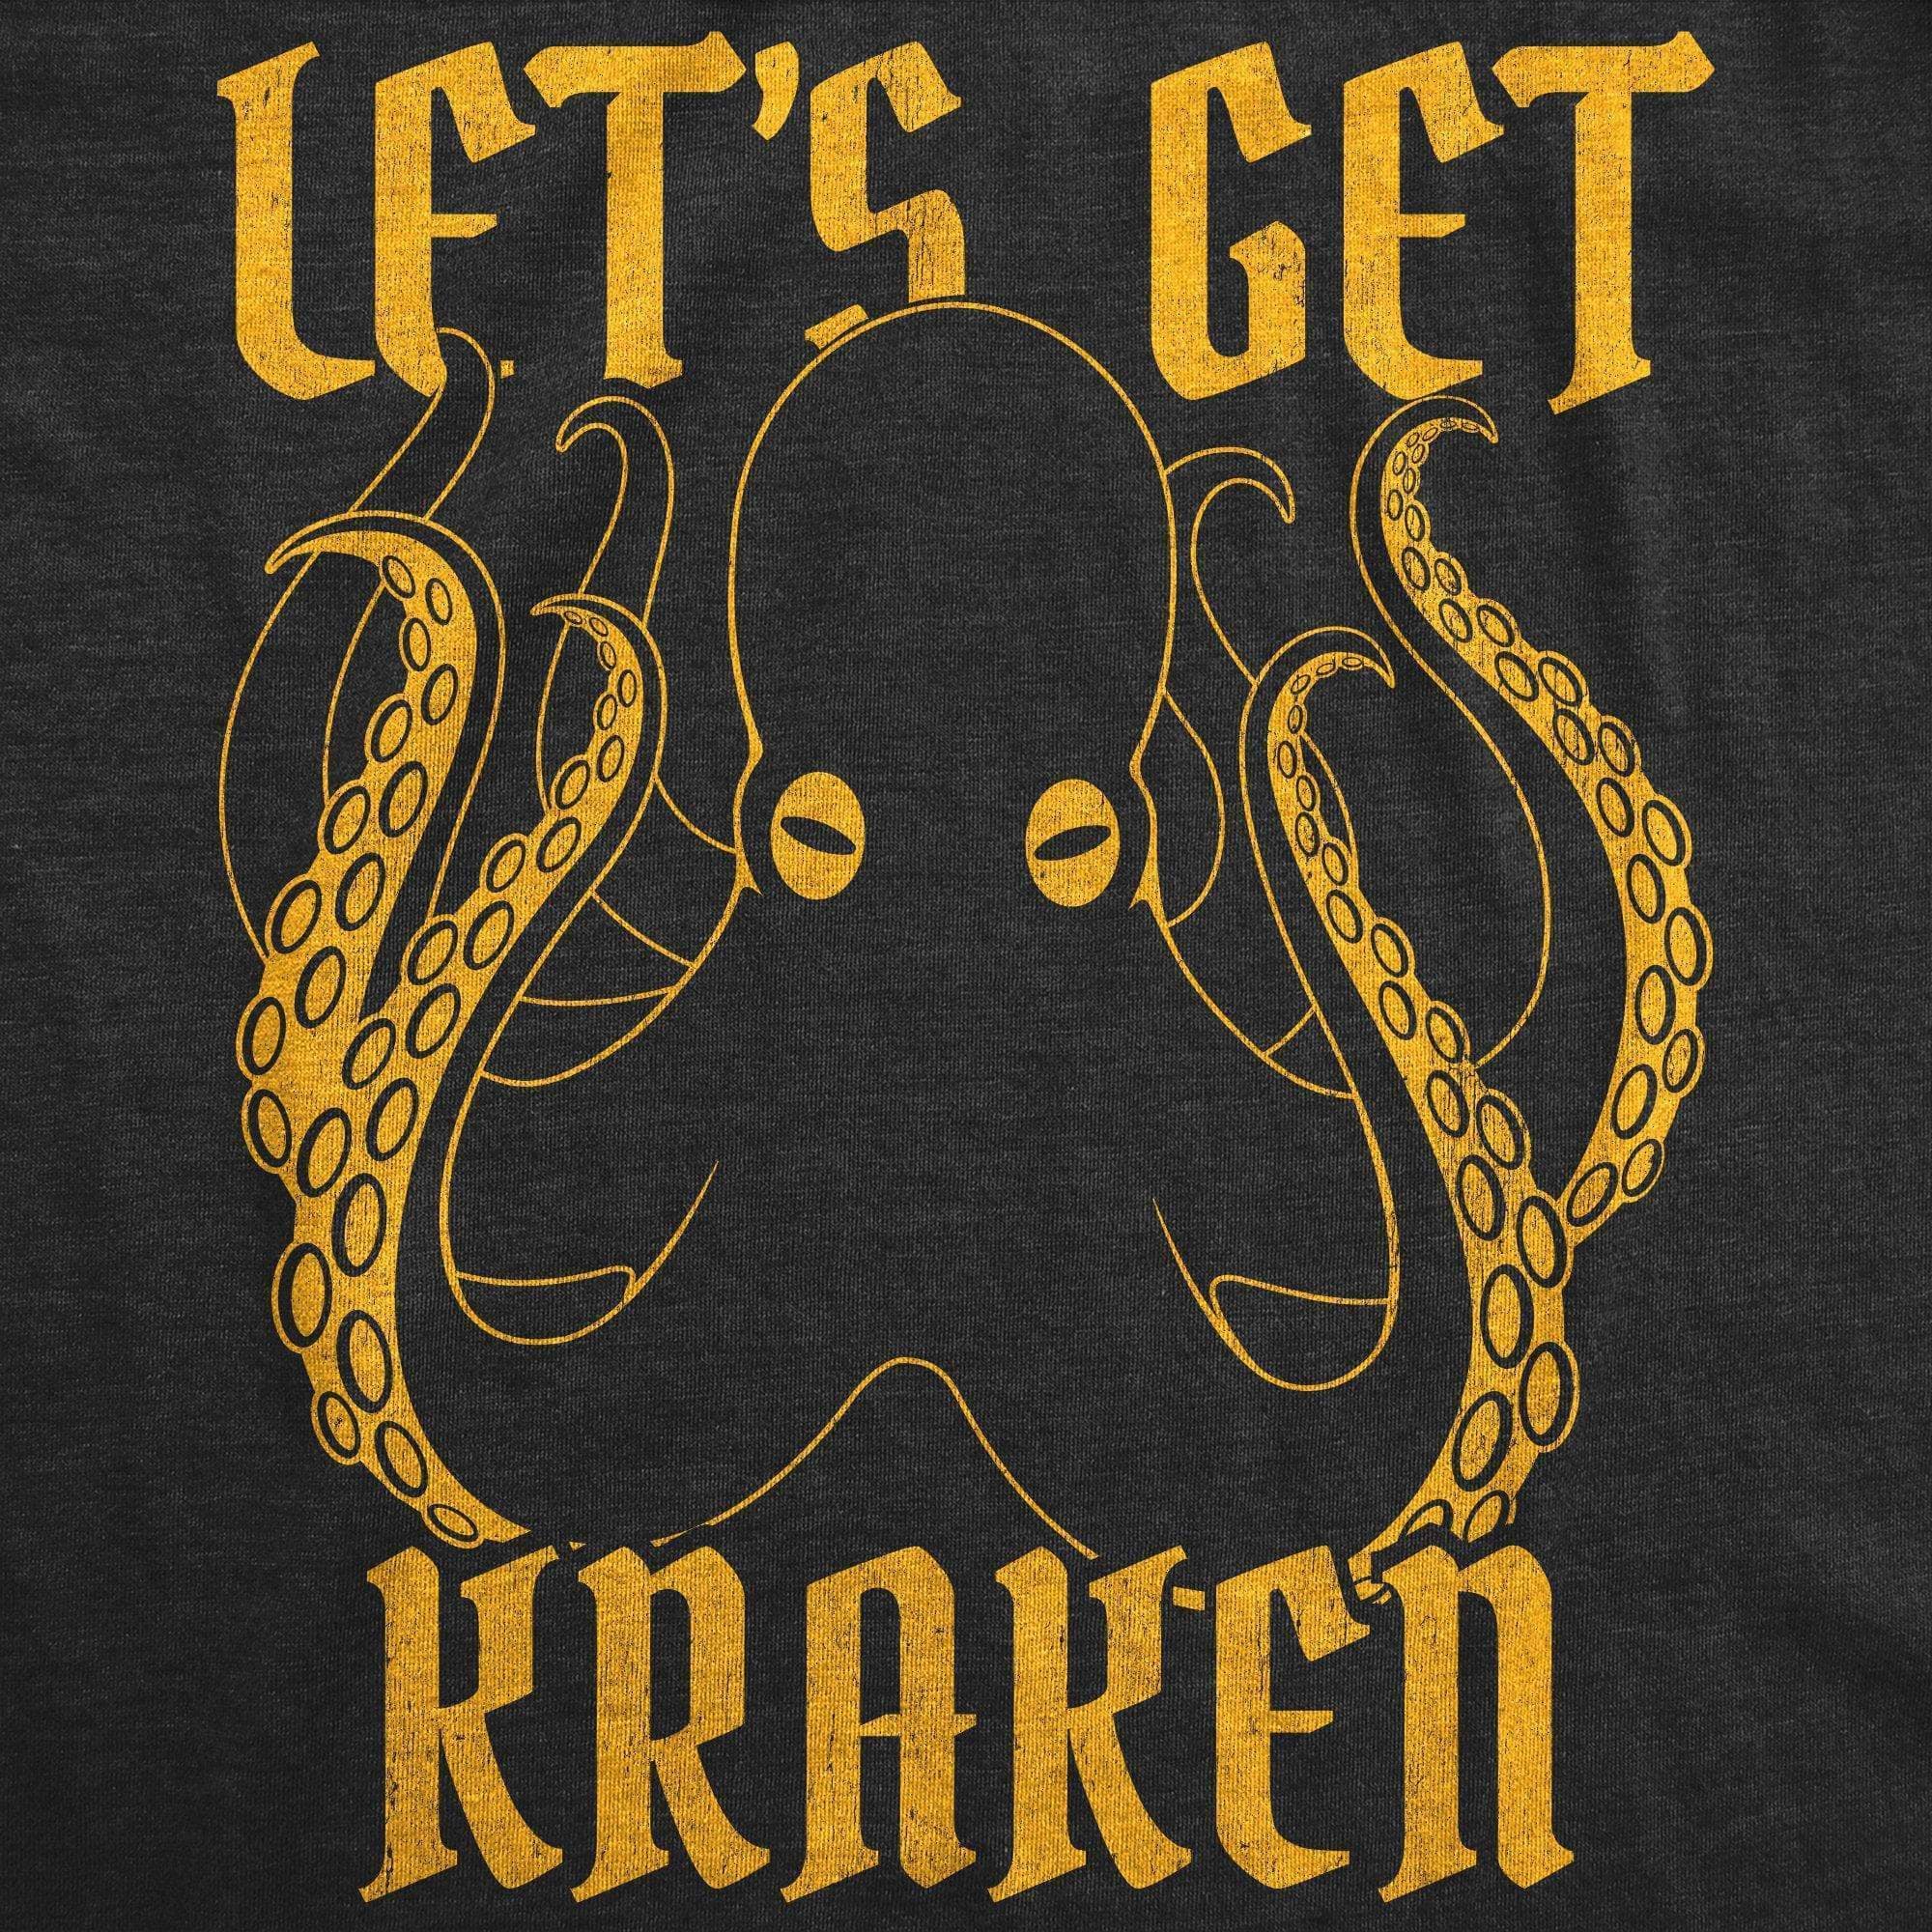 Let's Get Kraken Men's Tshirt - Crazy Dog T-Shirts